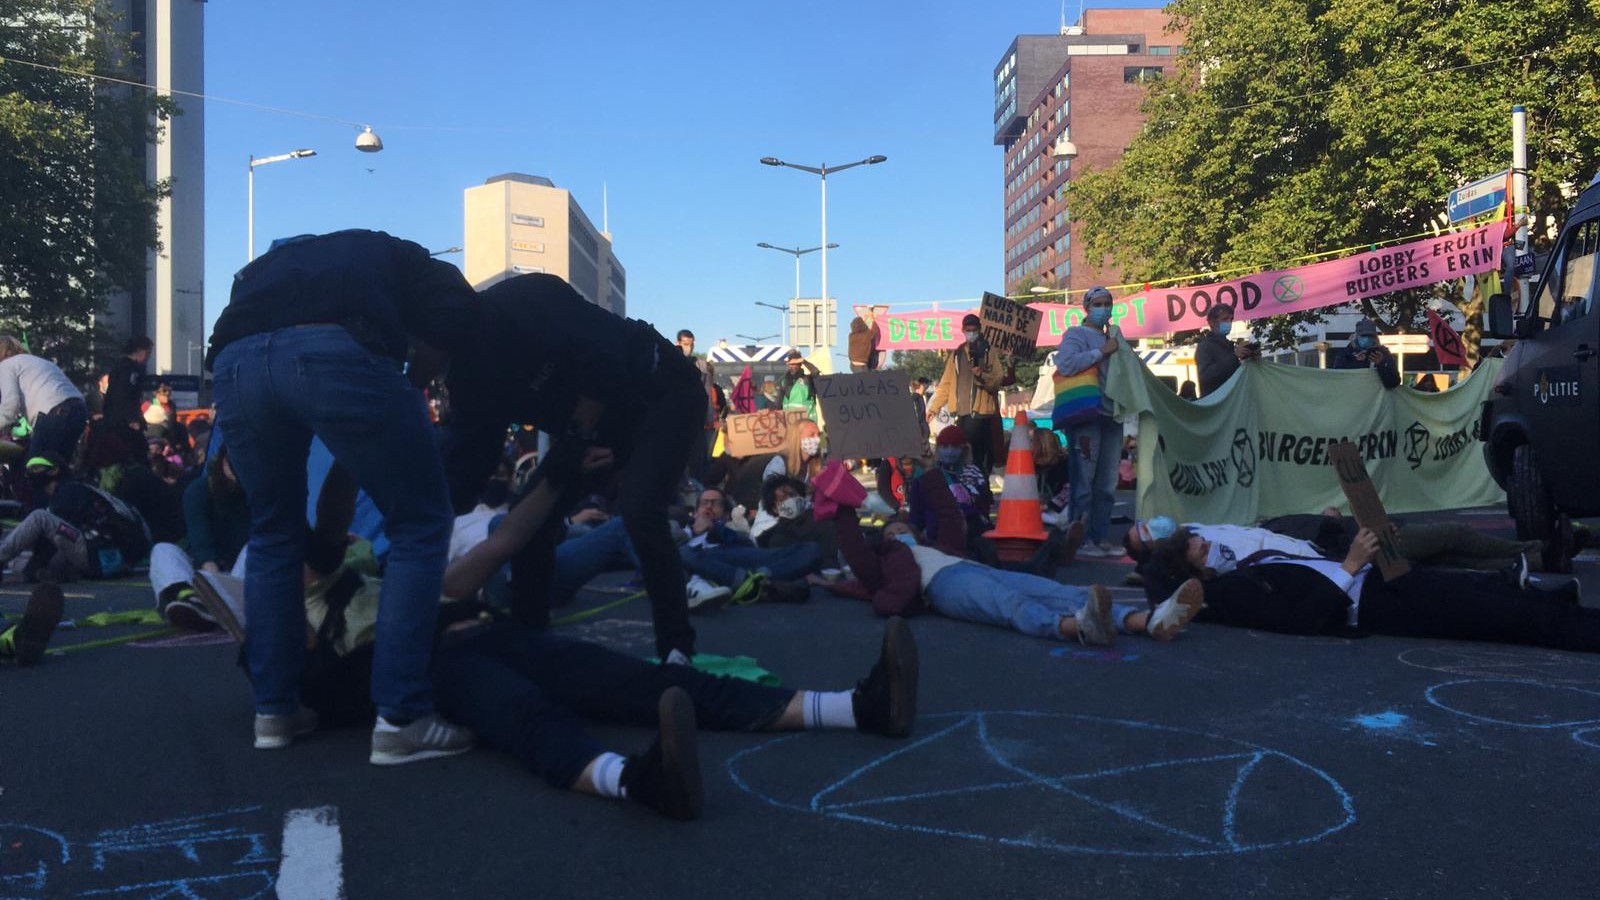 Blokkade Europaboulevard/De Boelelaan